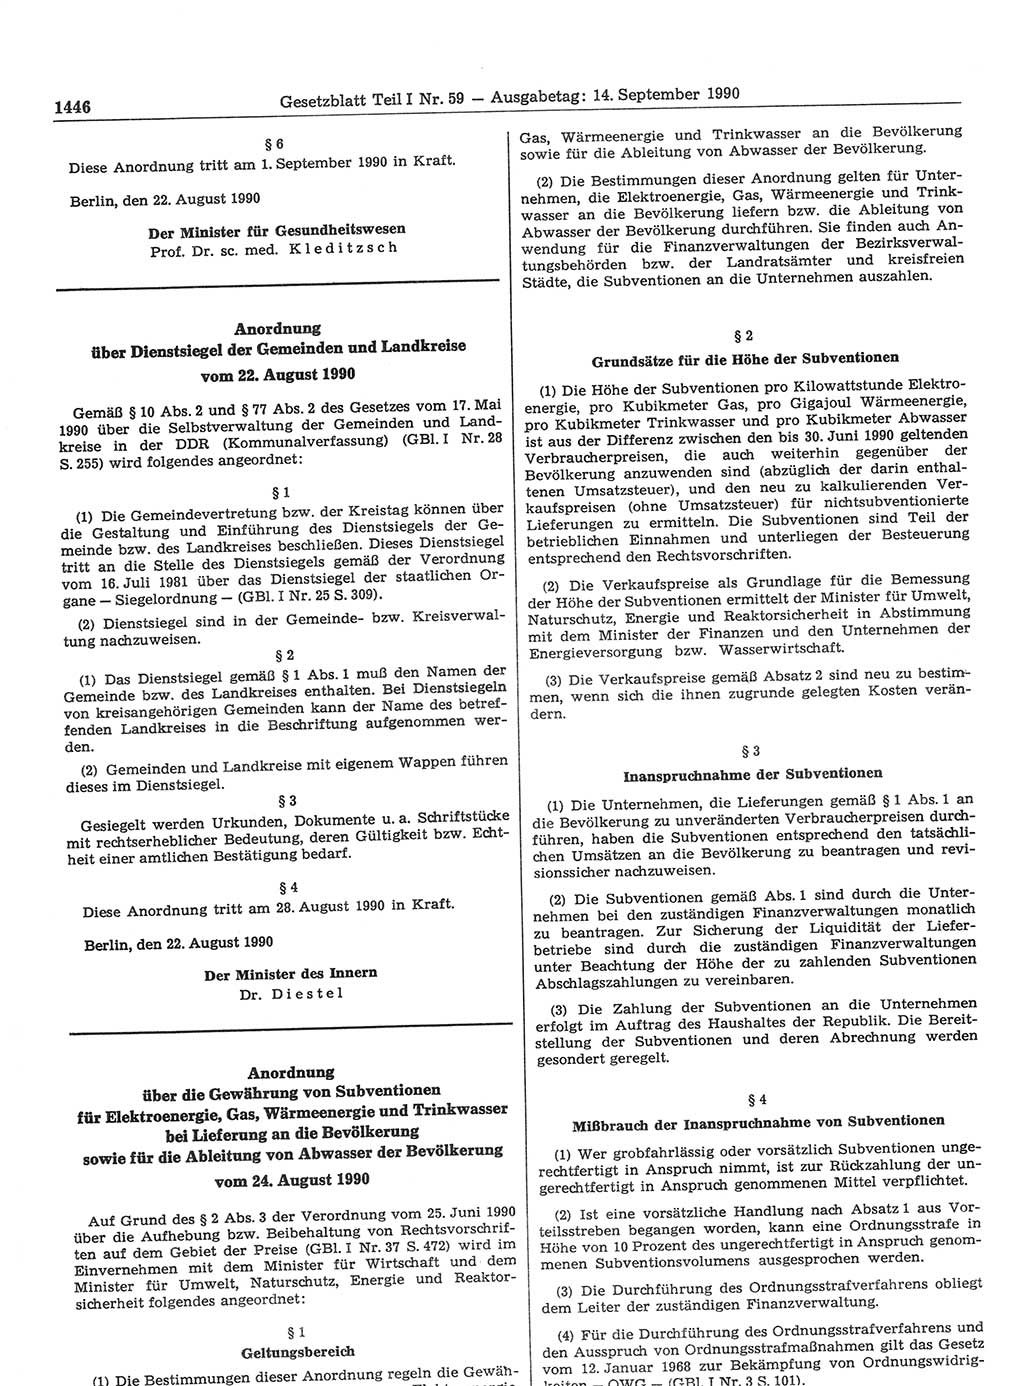 Gesetzblatt (GBl.) der Deutschen Demokratischen Republik (DDR) Teil Ⅰ 1990, Seite 1446 (GBl. DDR Ⅰ 1990, S. 1446)